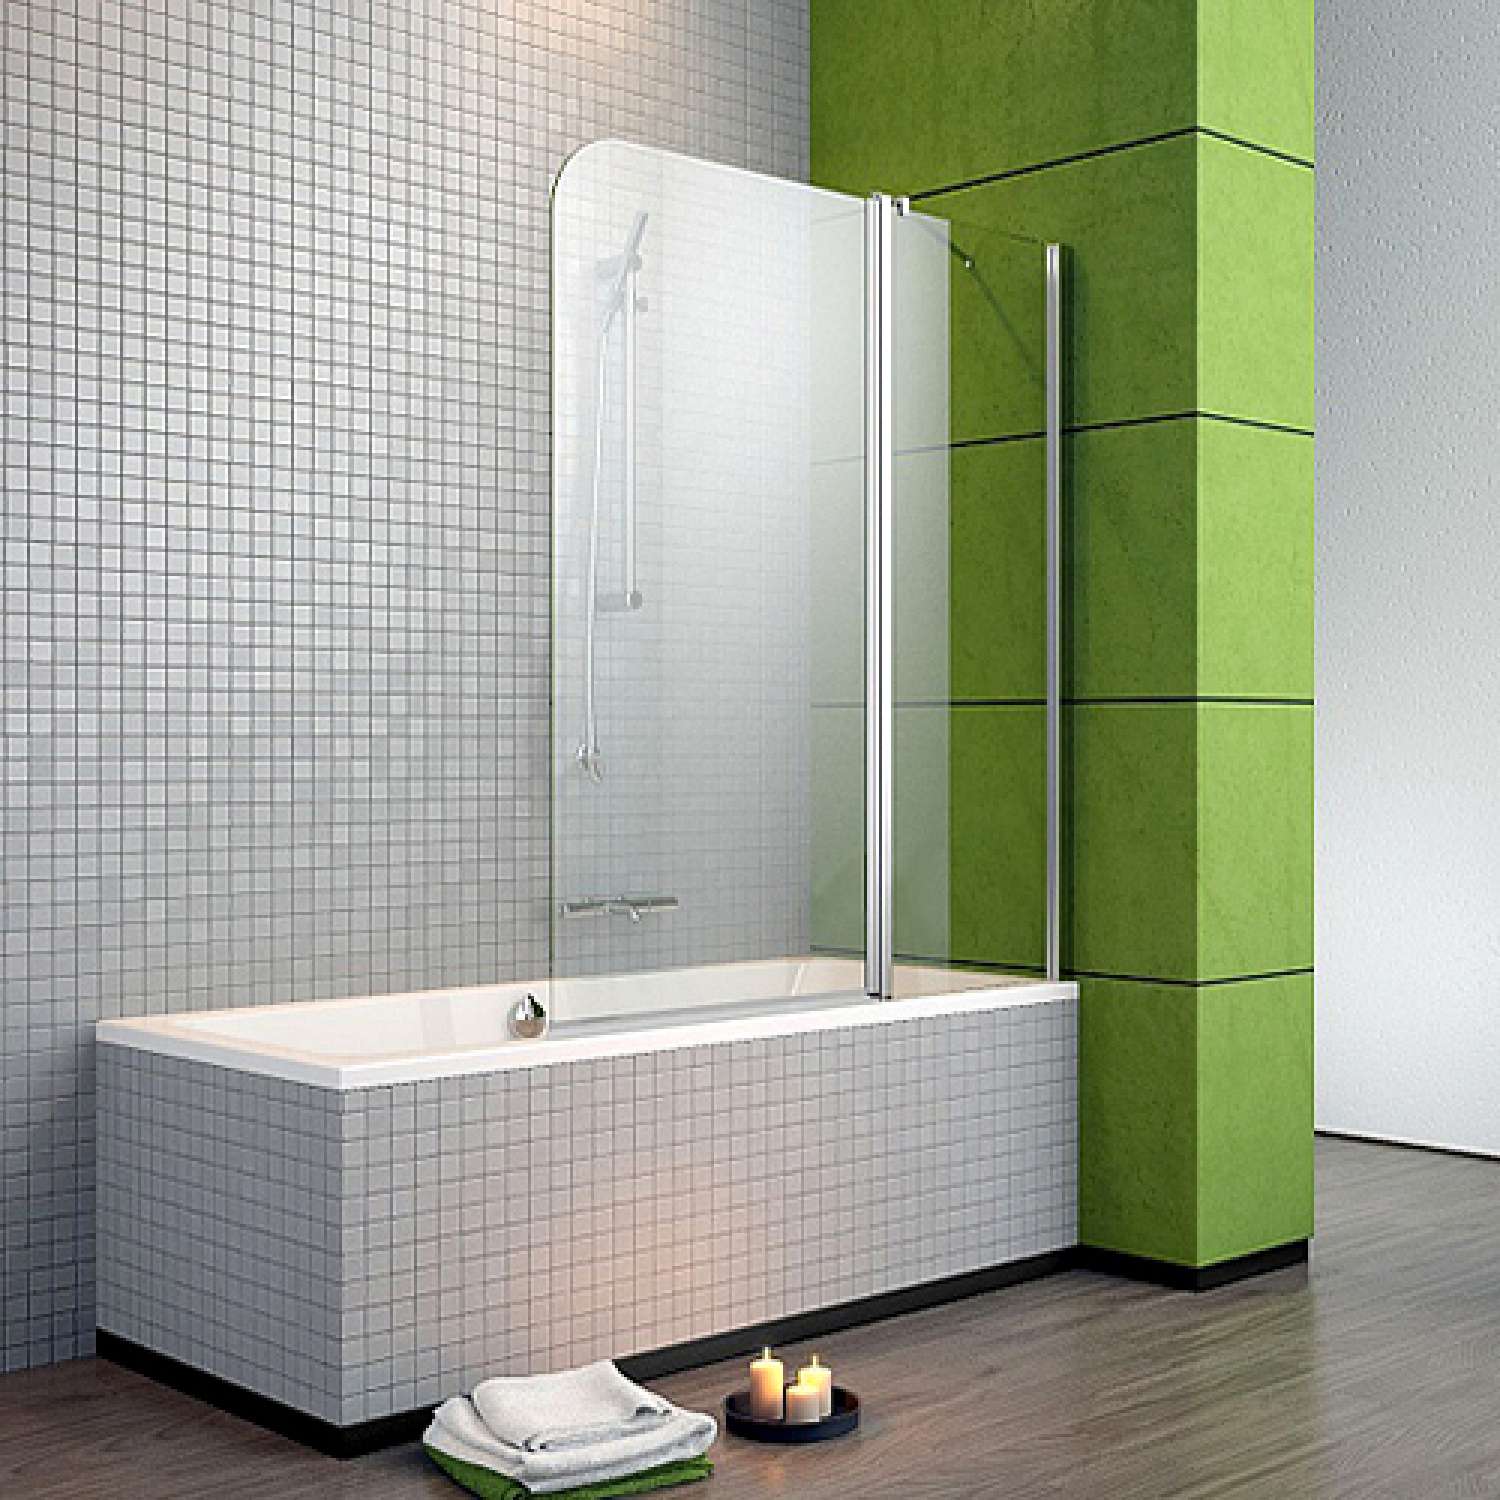 Стеклянные шторки для ванной - все "за" и "против" | онлайн-журнал о ремонте и дизайне